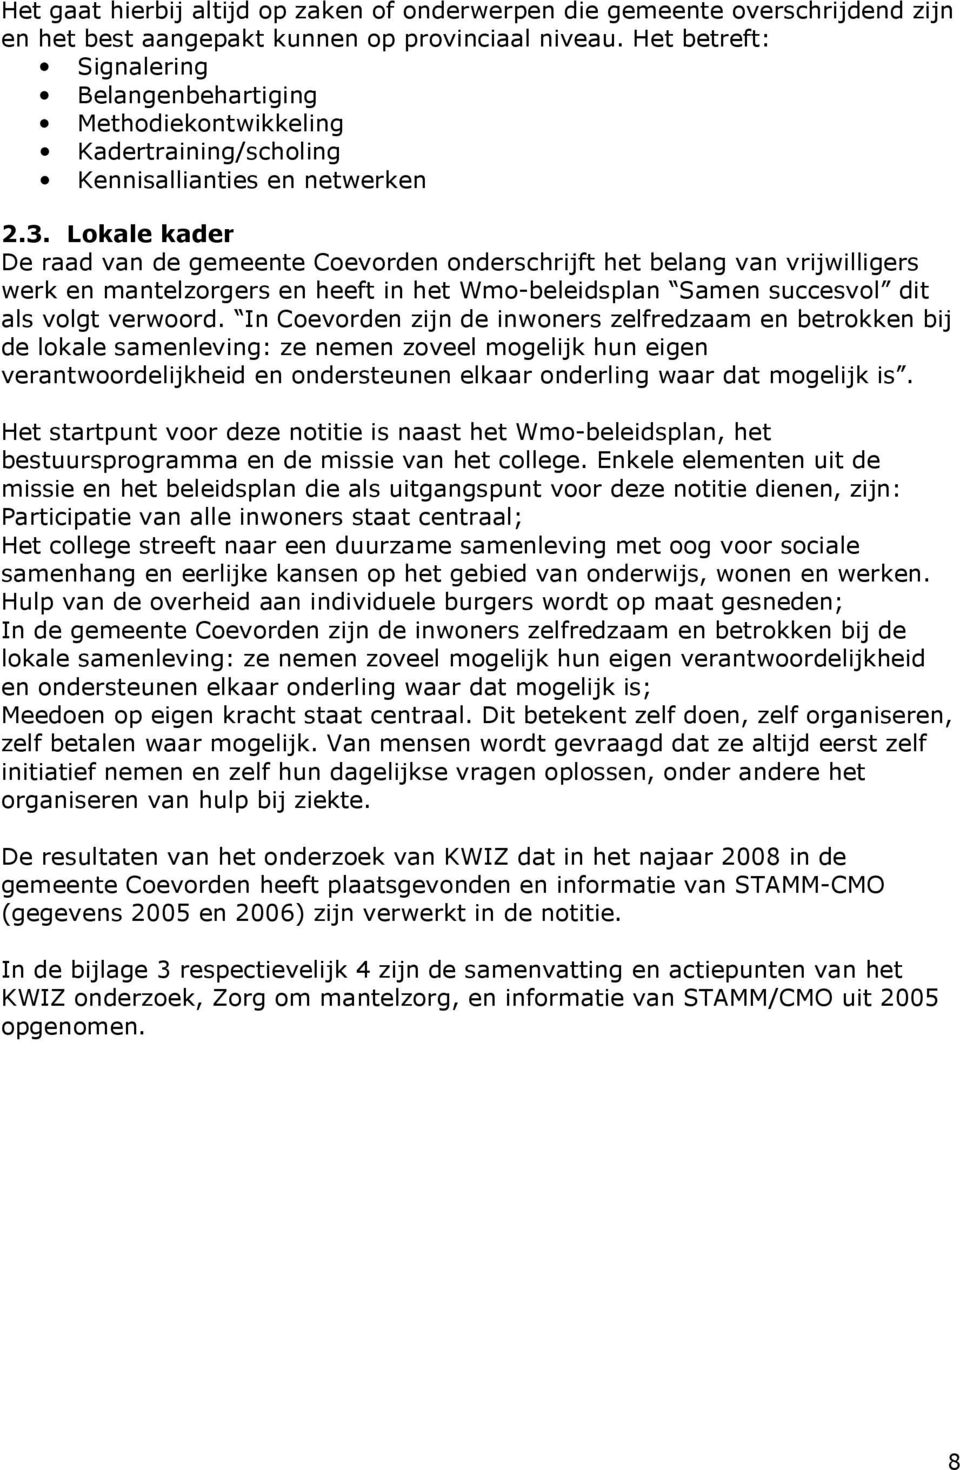 Lokale kader De raad van de gemeente Coevorden onderschrijft het belang van vrijwilligers werk en mantelzorgers en heeft in het Wmo-beleidsplan Samen succesvol dit als volgt verwoord.